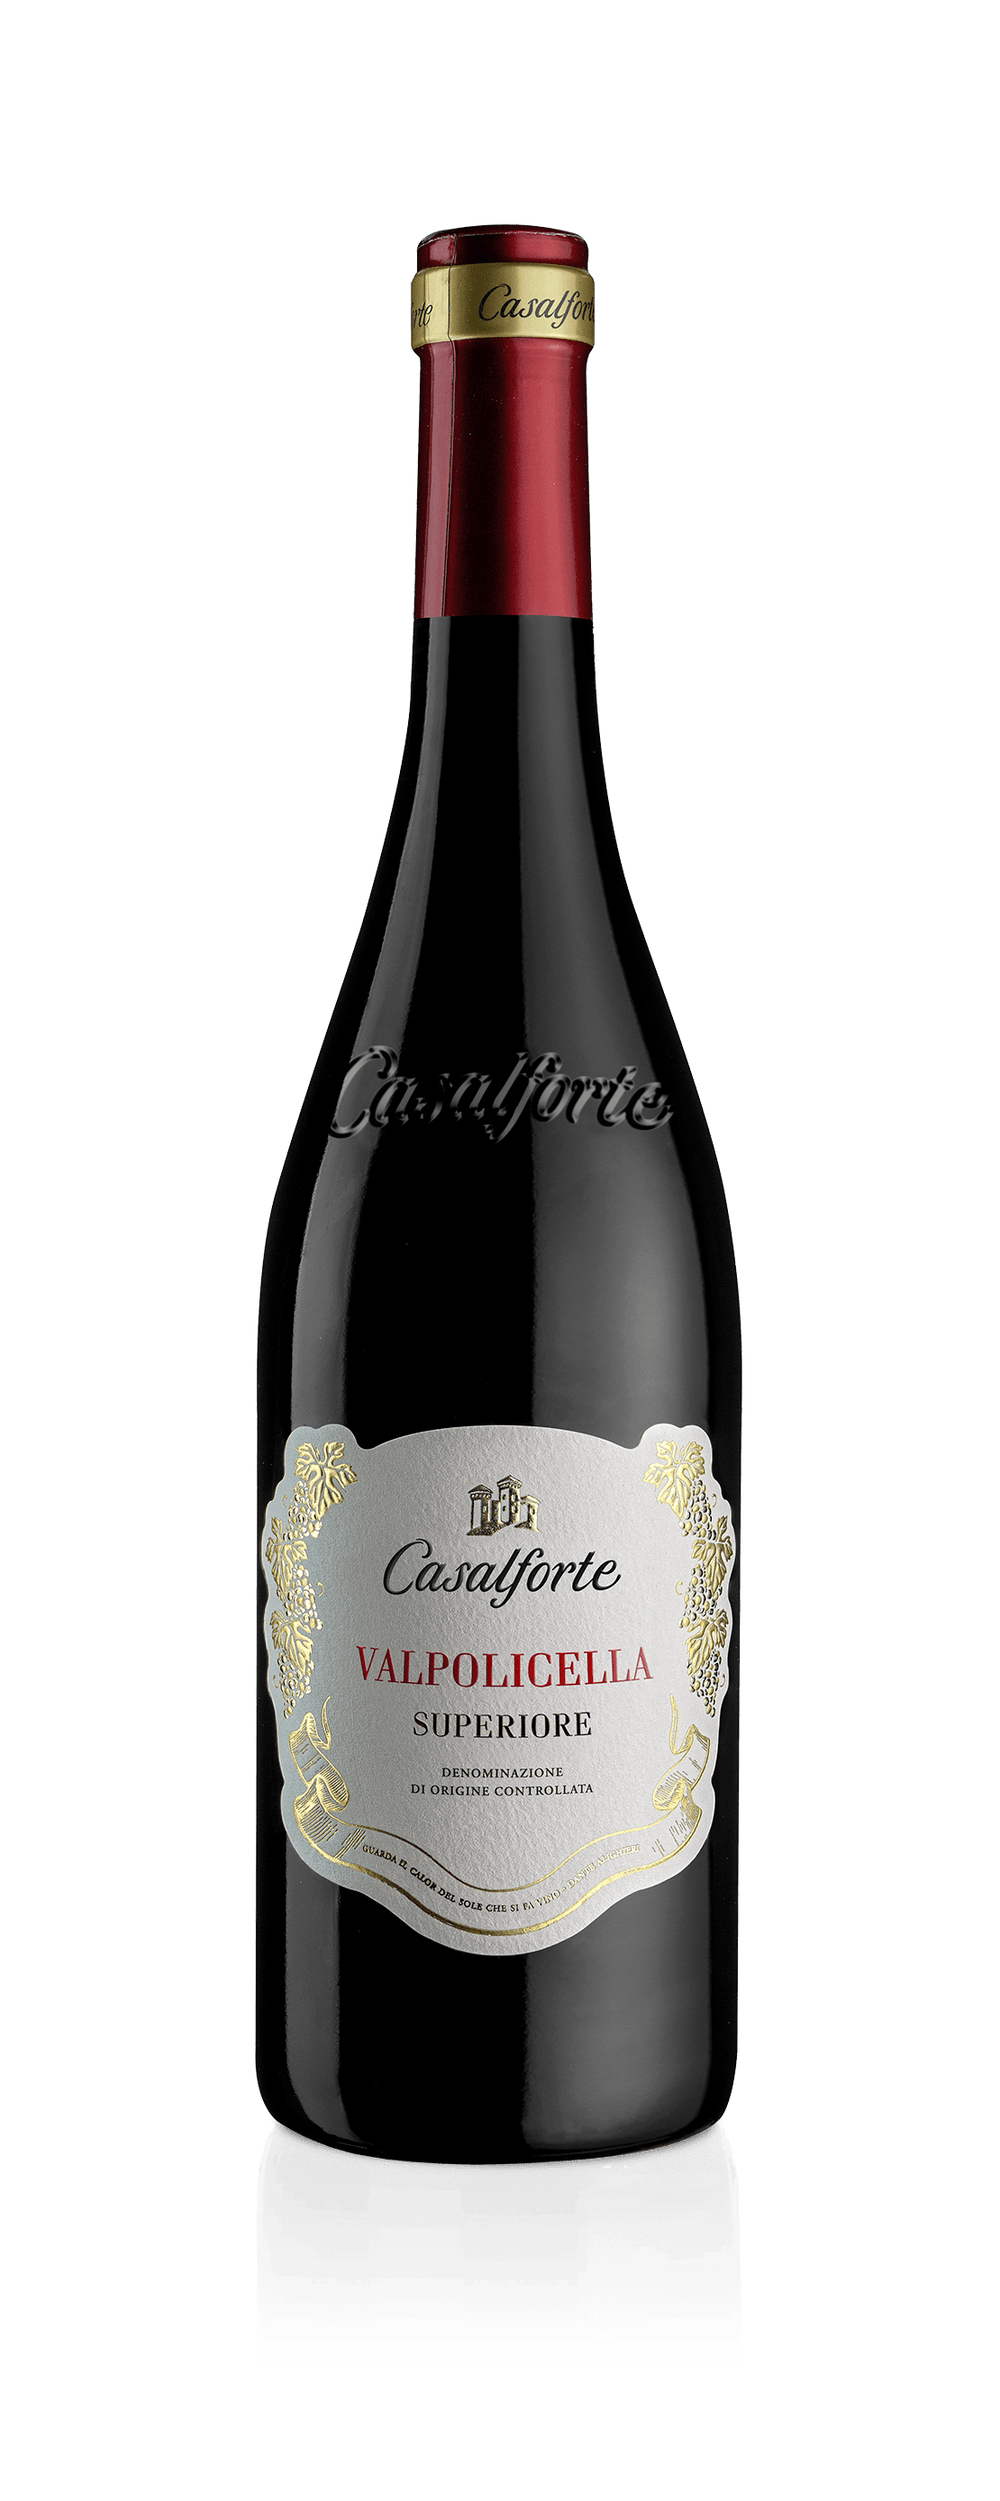 Cantine Riondo - 'Castelforte' Valpolicella Classico Superiore 2019